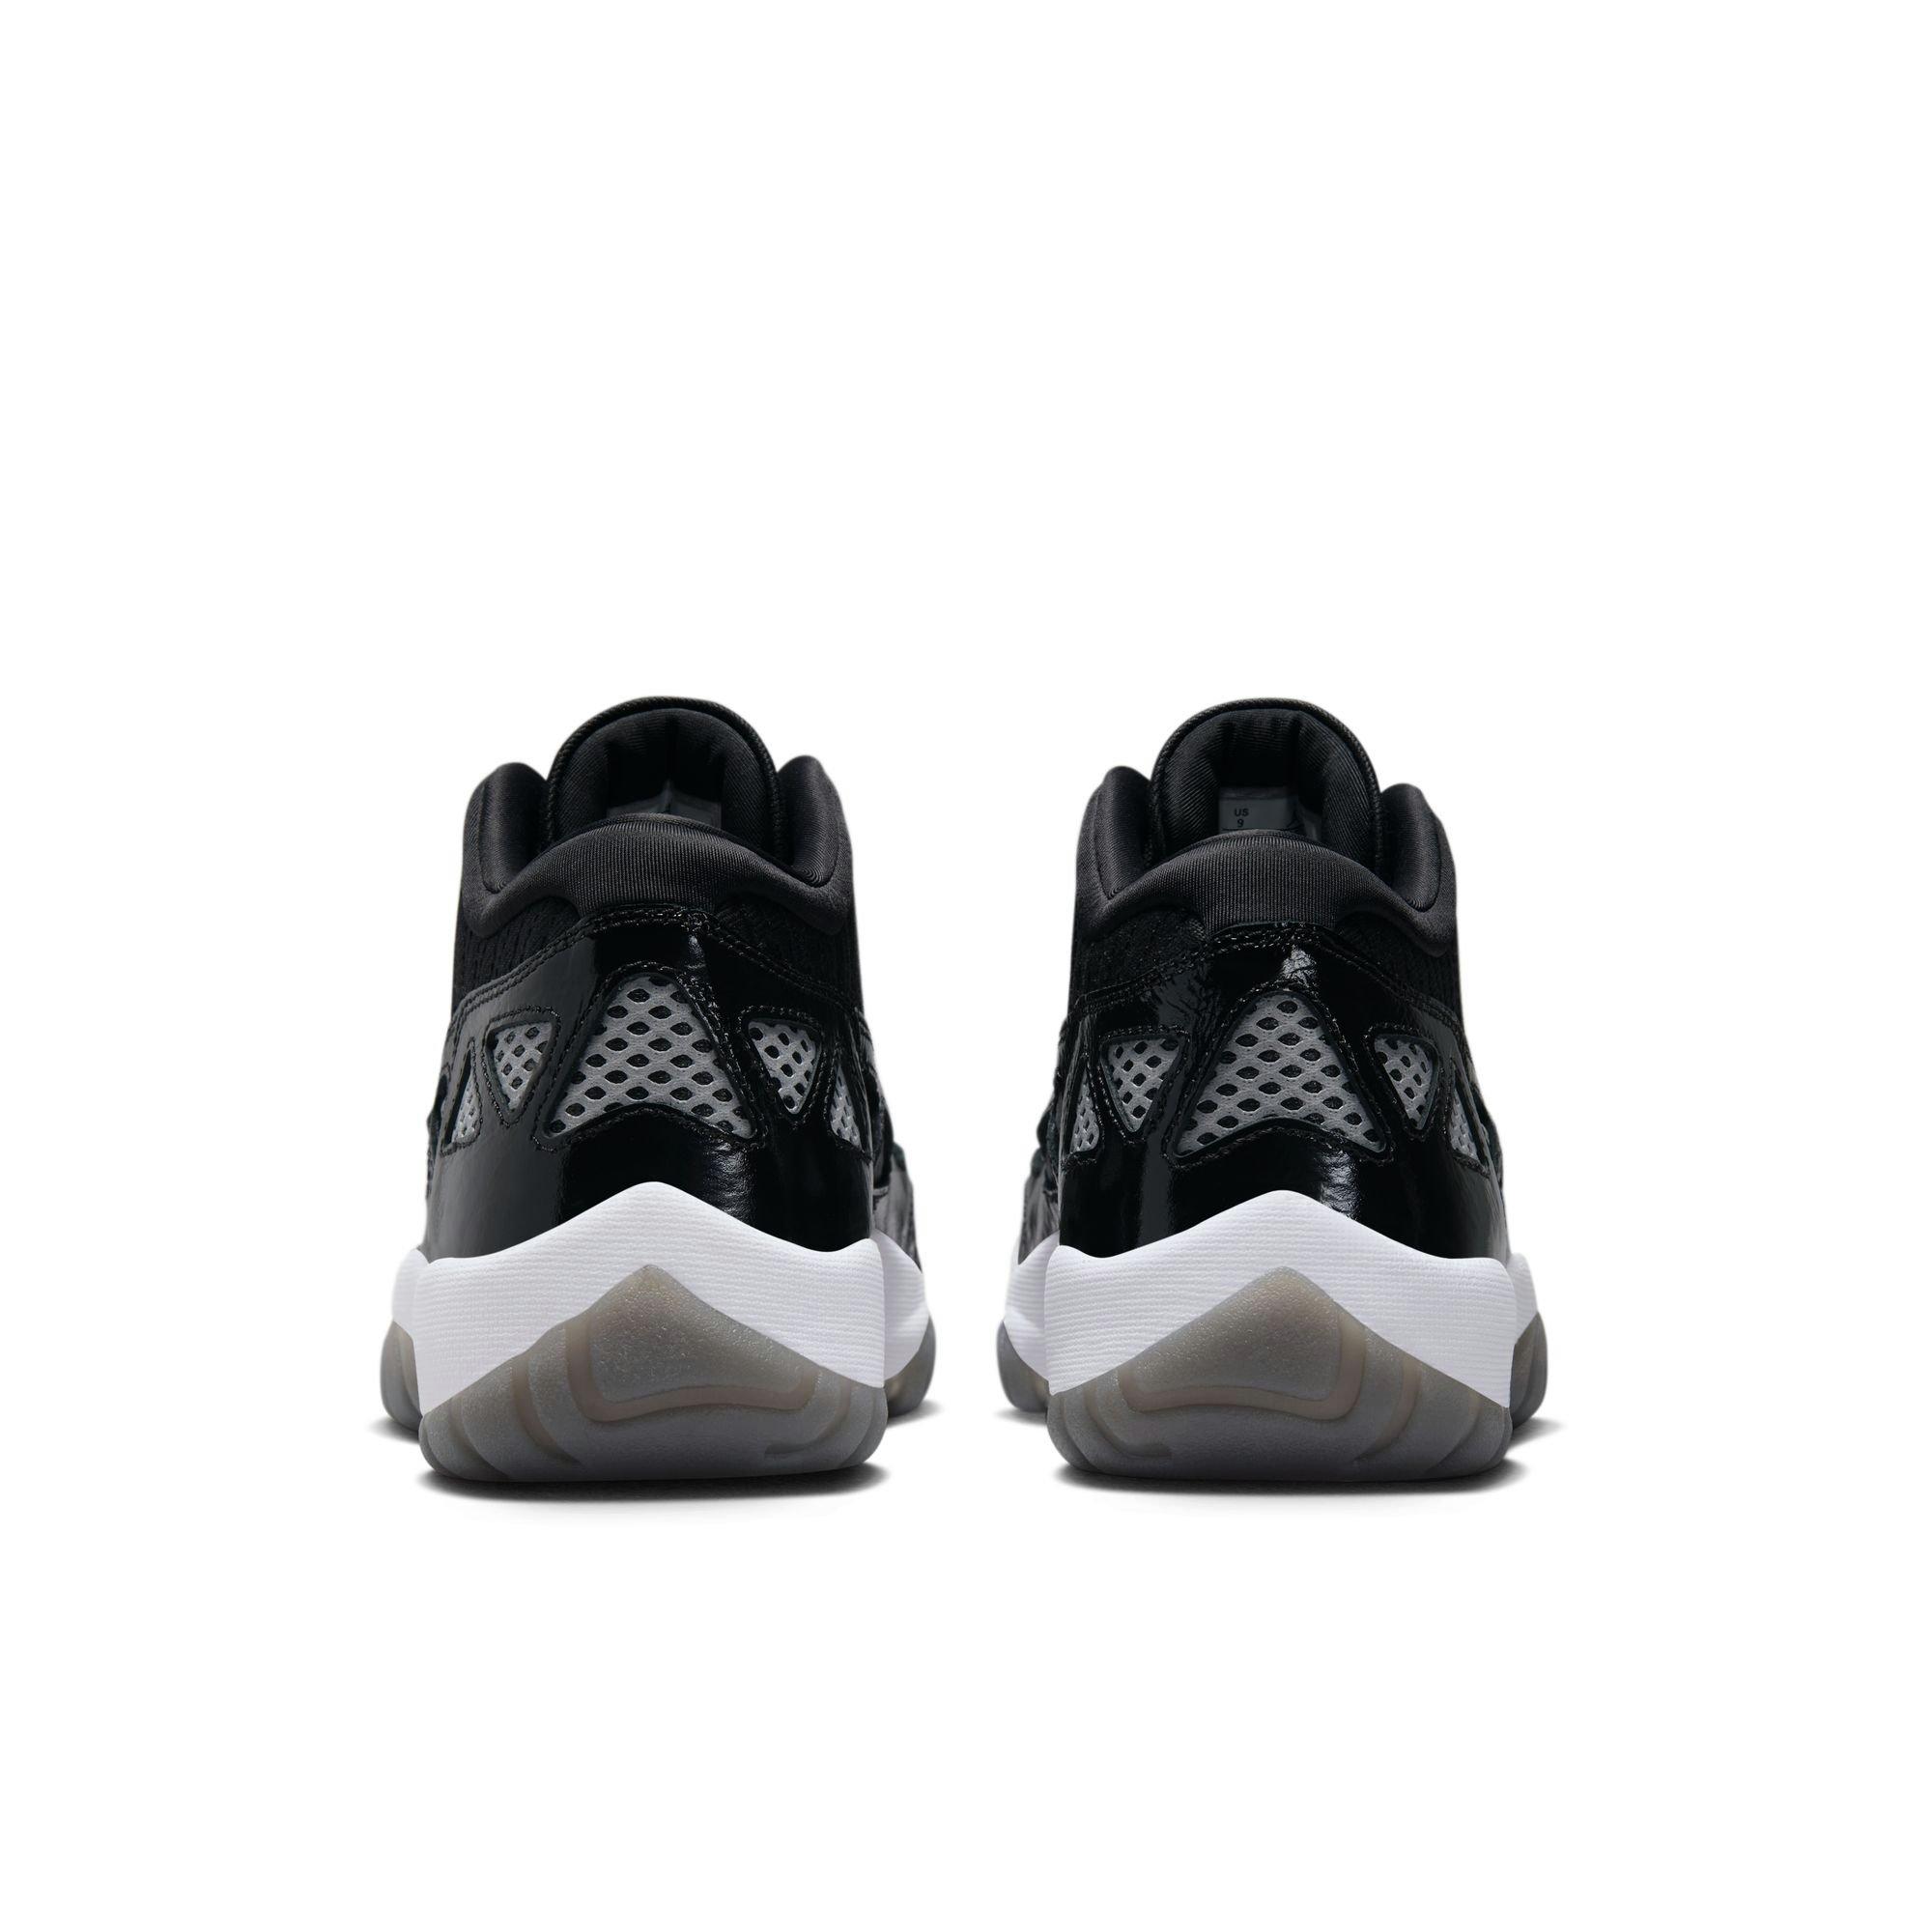 Titolo Shop - ONLINE NOW ⚫️ Air Jordan 11 Retro Low Black